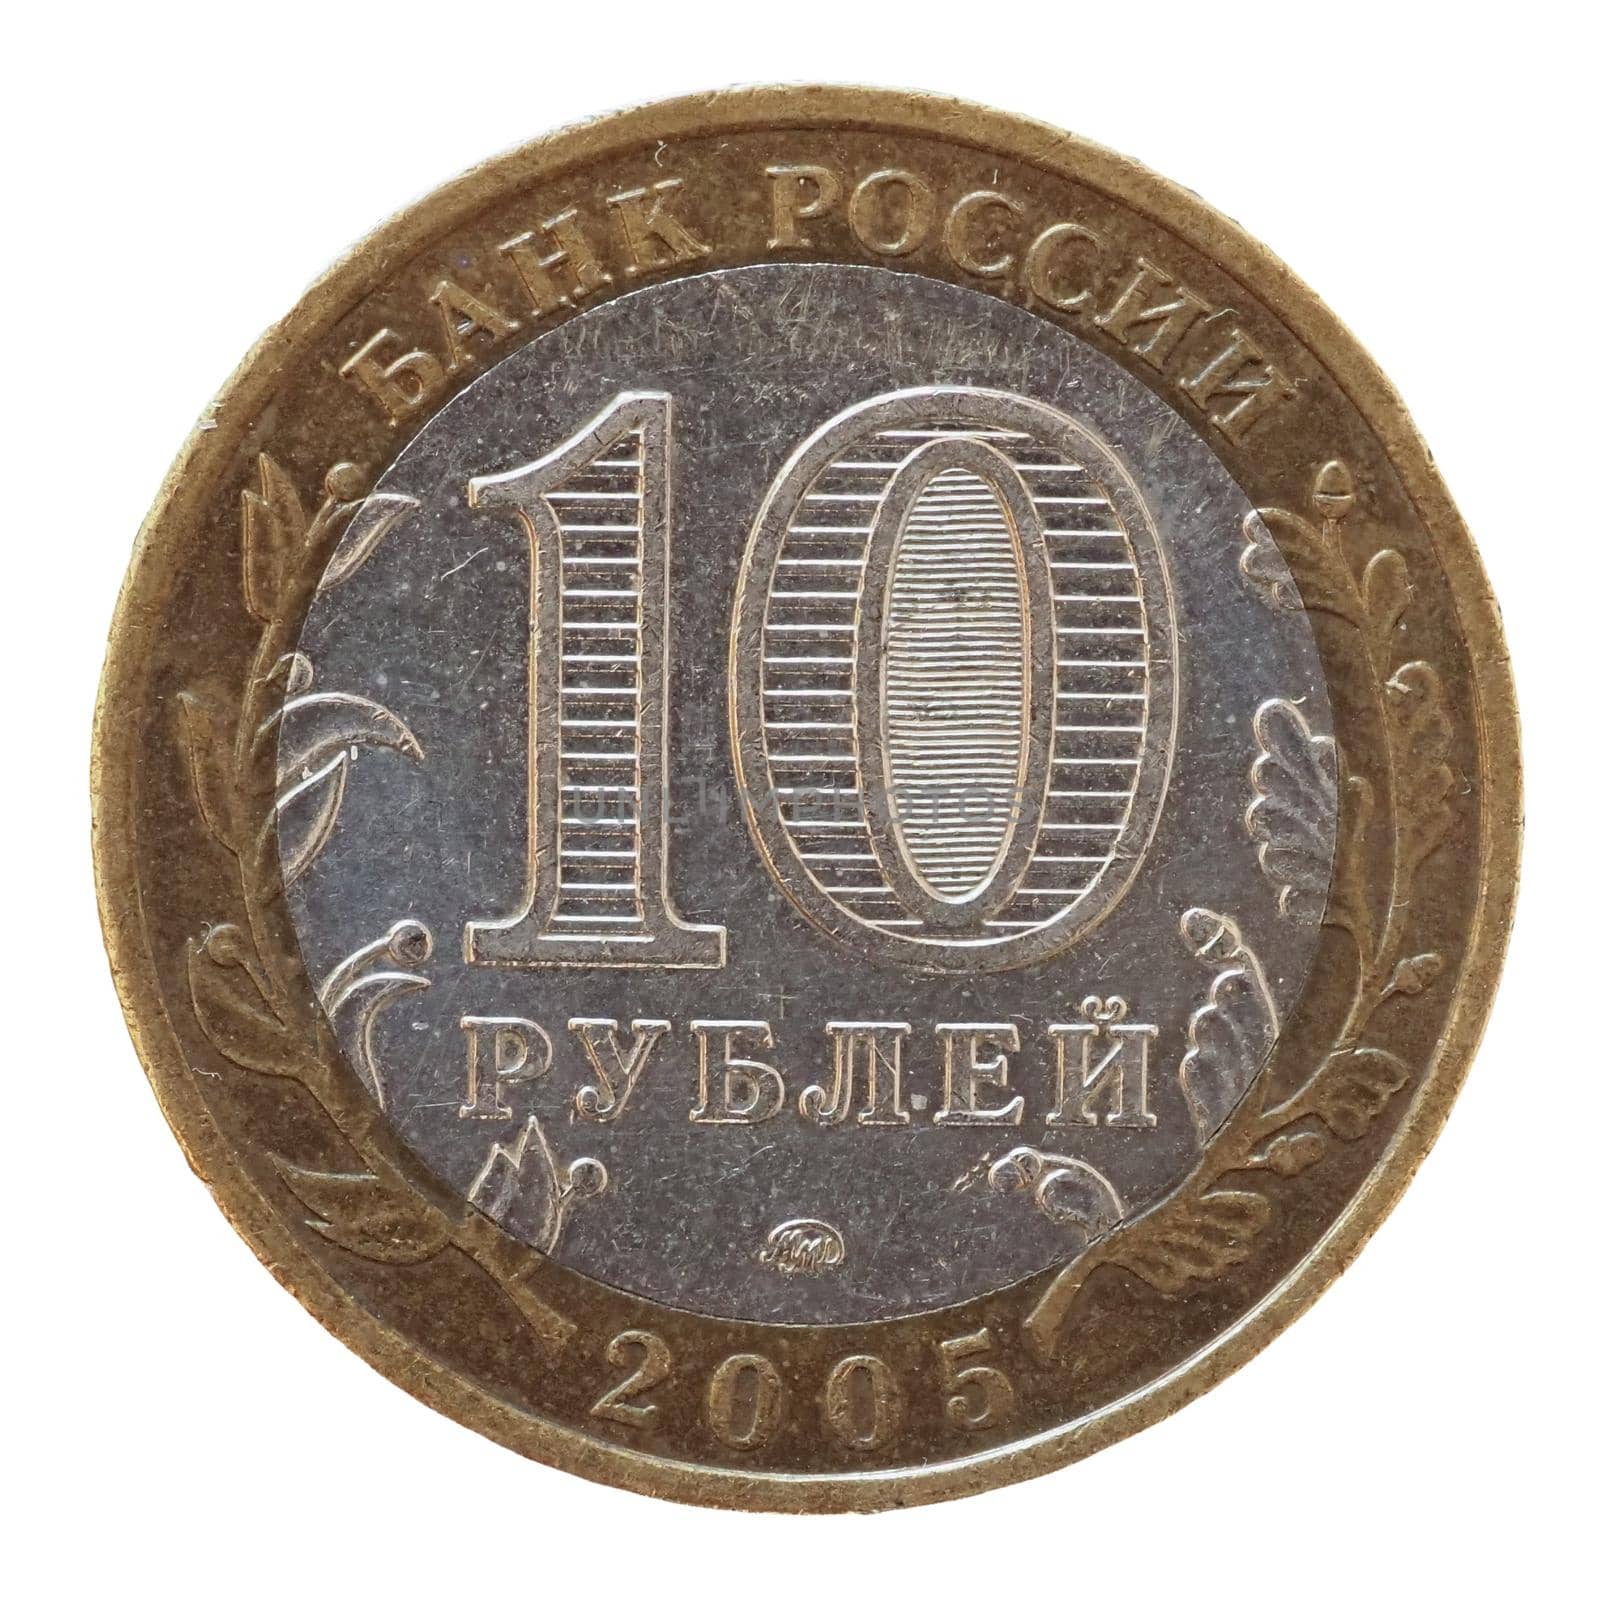 10 Ruble coin, Russia by claudiodivizia